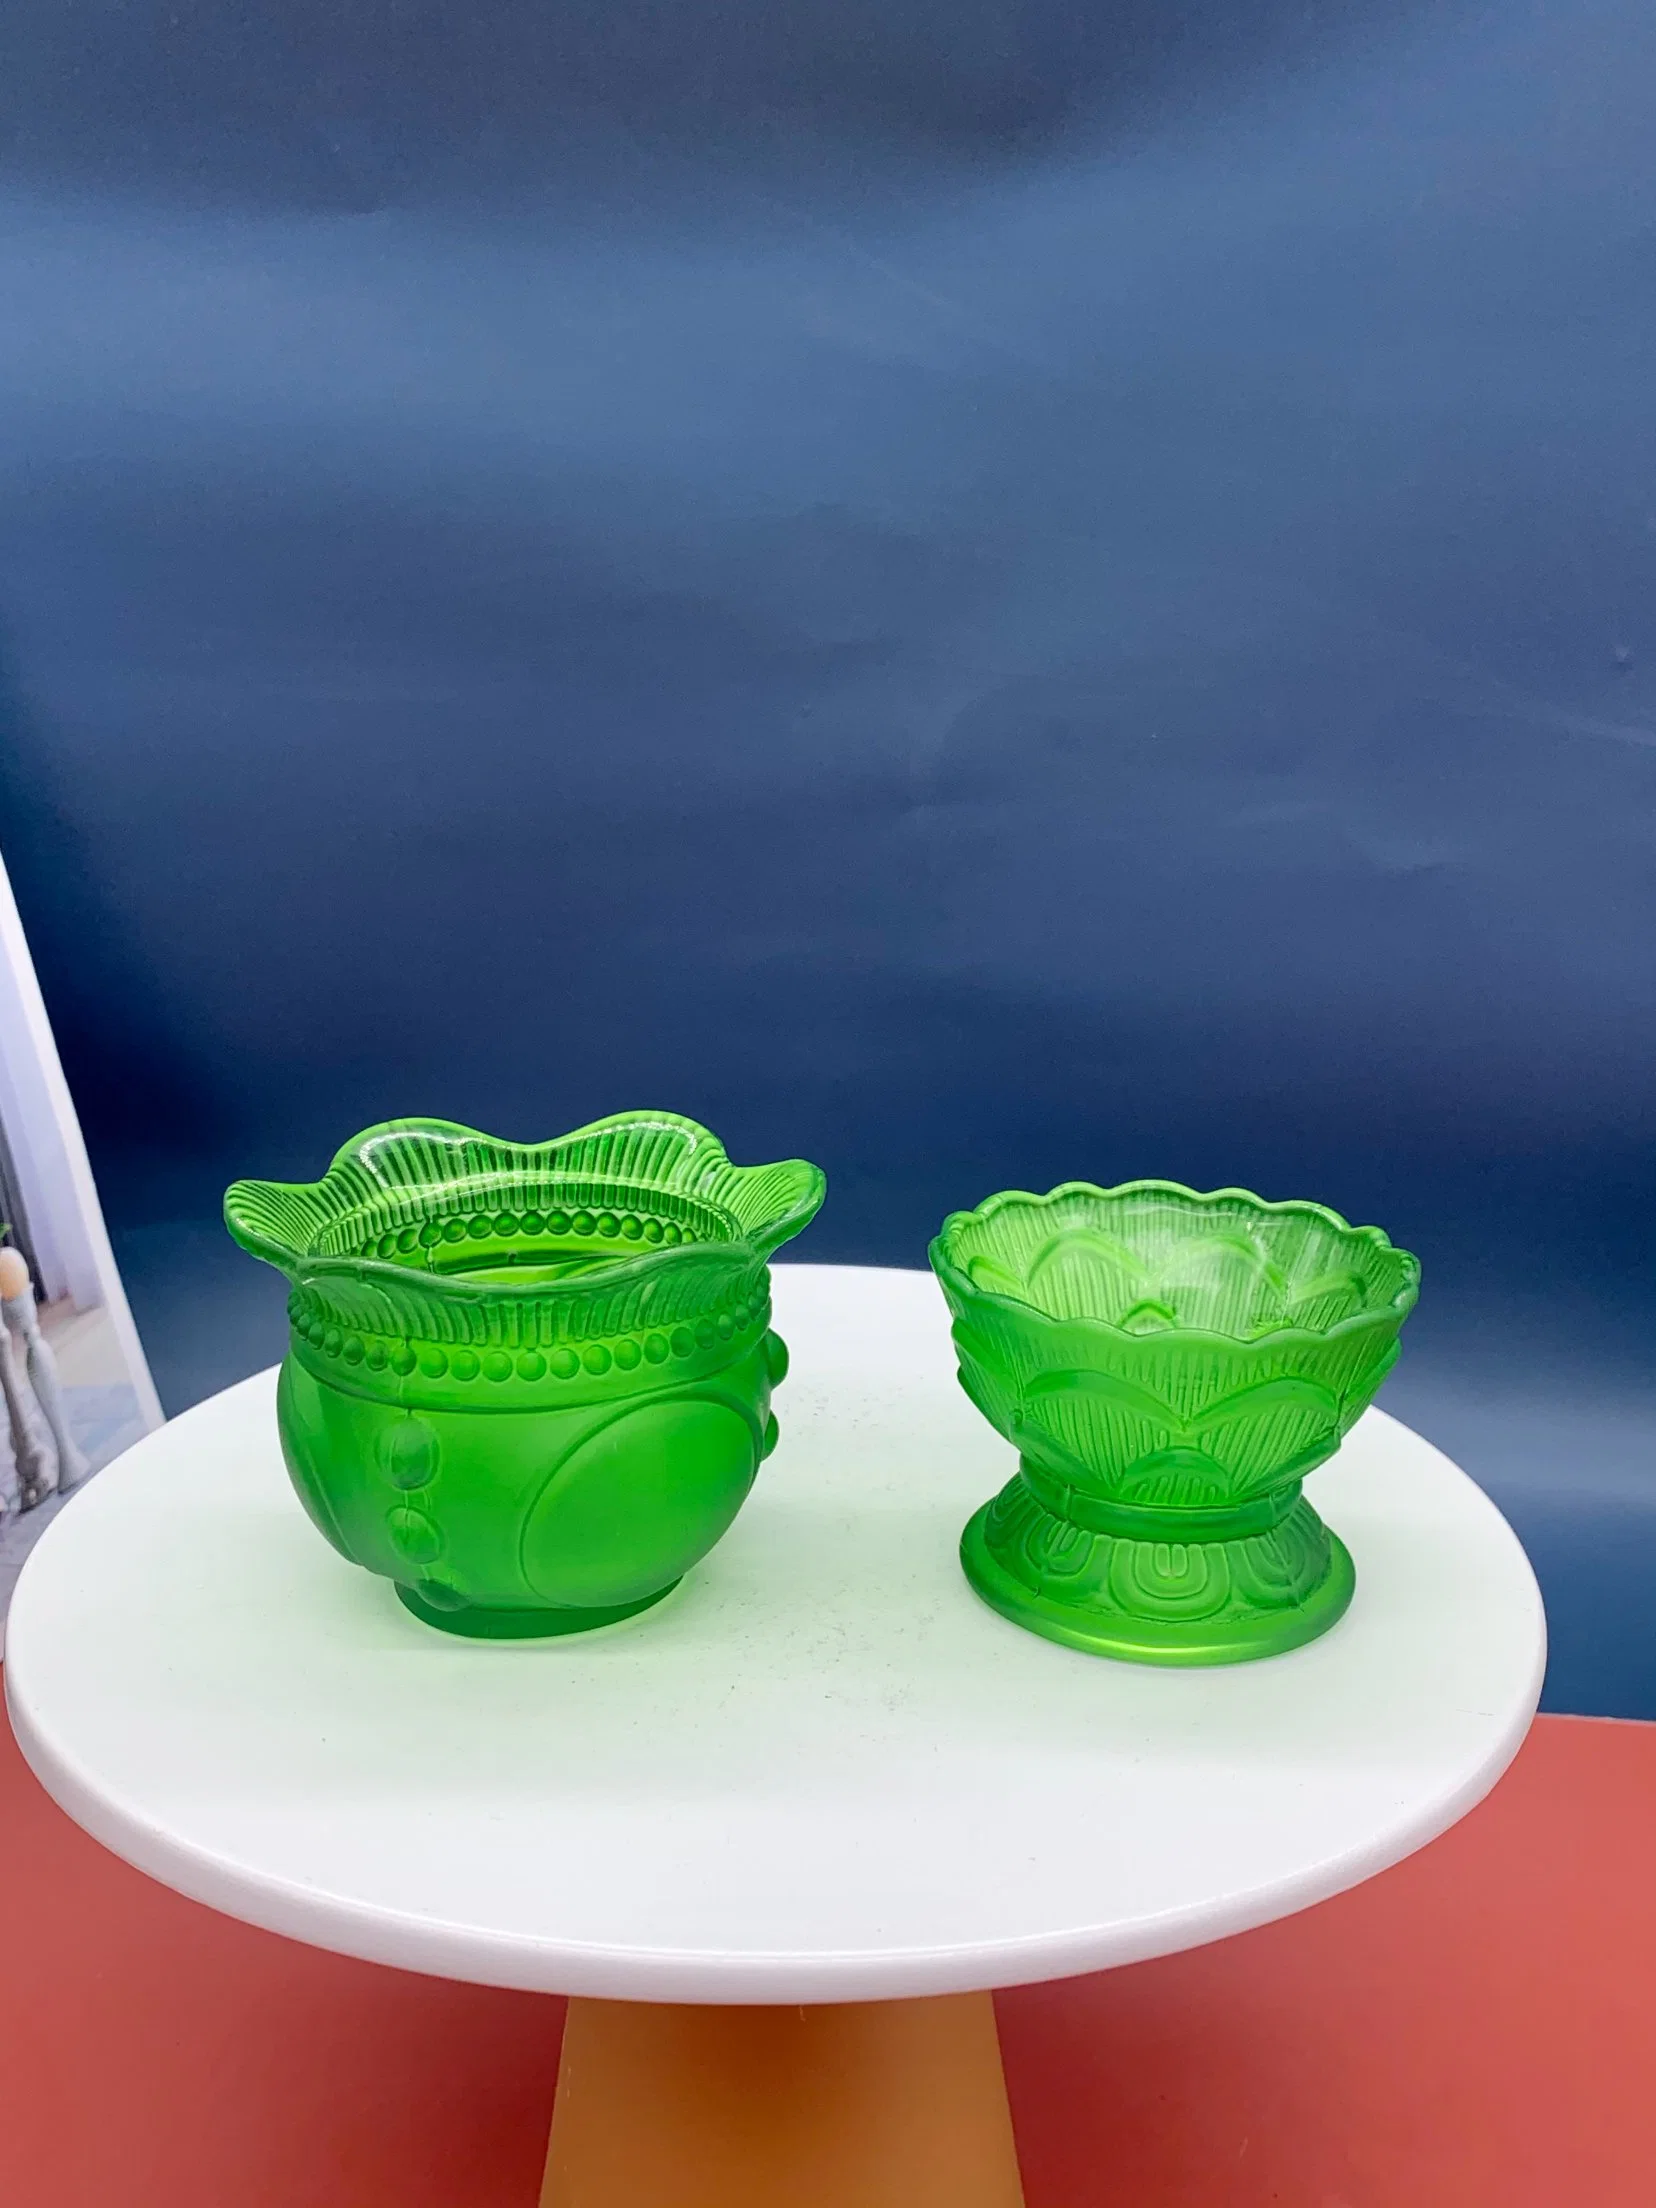 Производители оптовая торговля зеленой чашечки Lotus Notes украшения стекла чашечки сливочного масла лампа украшения домашних хозяйств, стекло судов